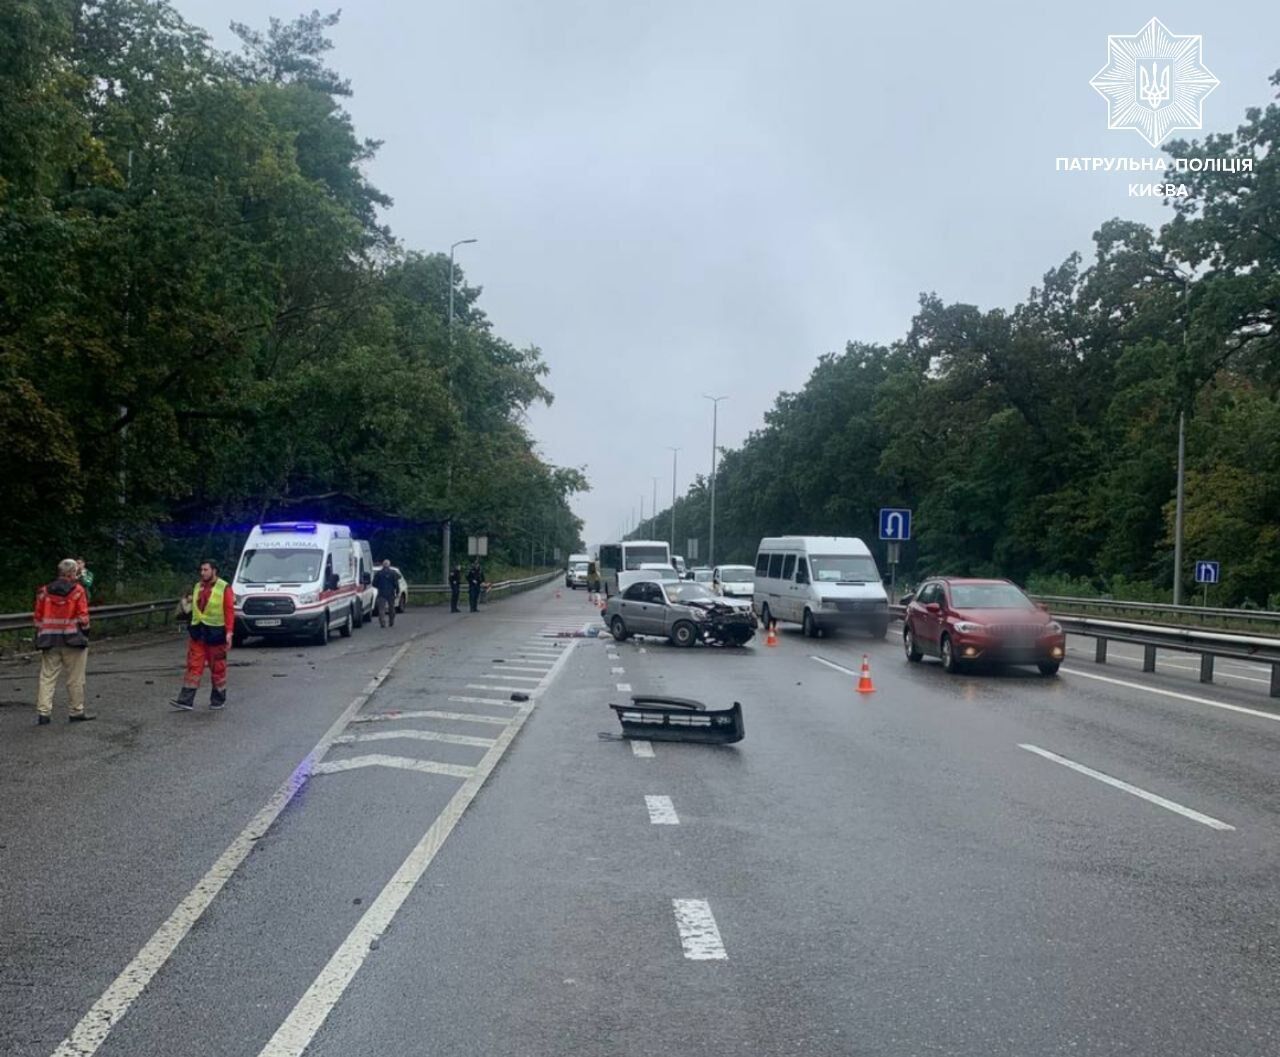 В Киеве произошла авария с участием двух легковушек: на въезде в город возникла пробка. Фото и видео